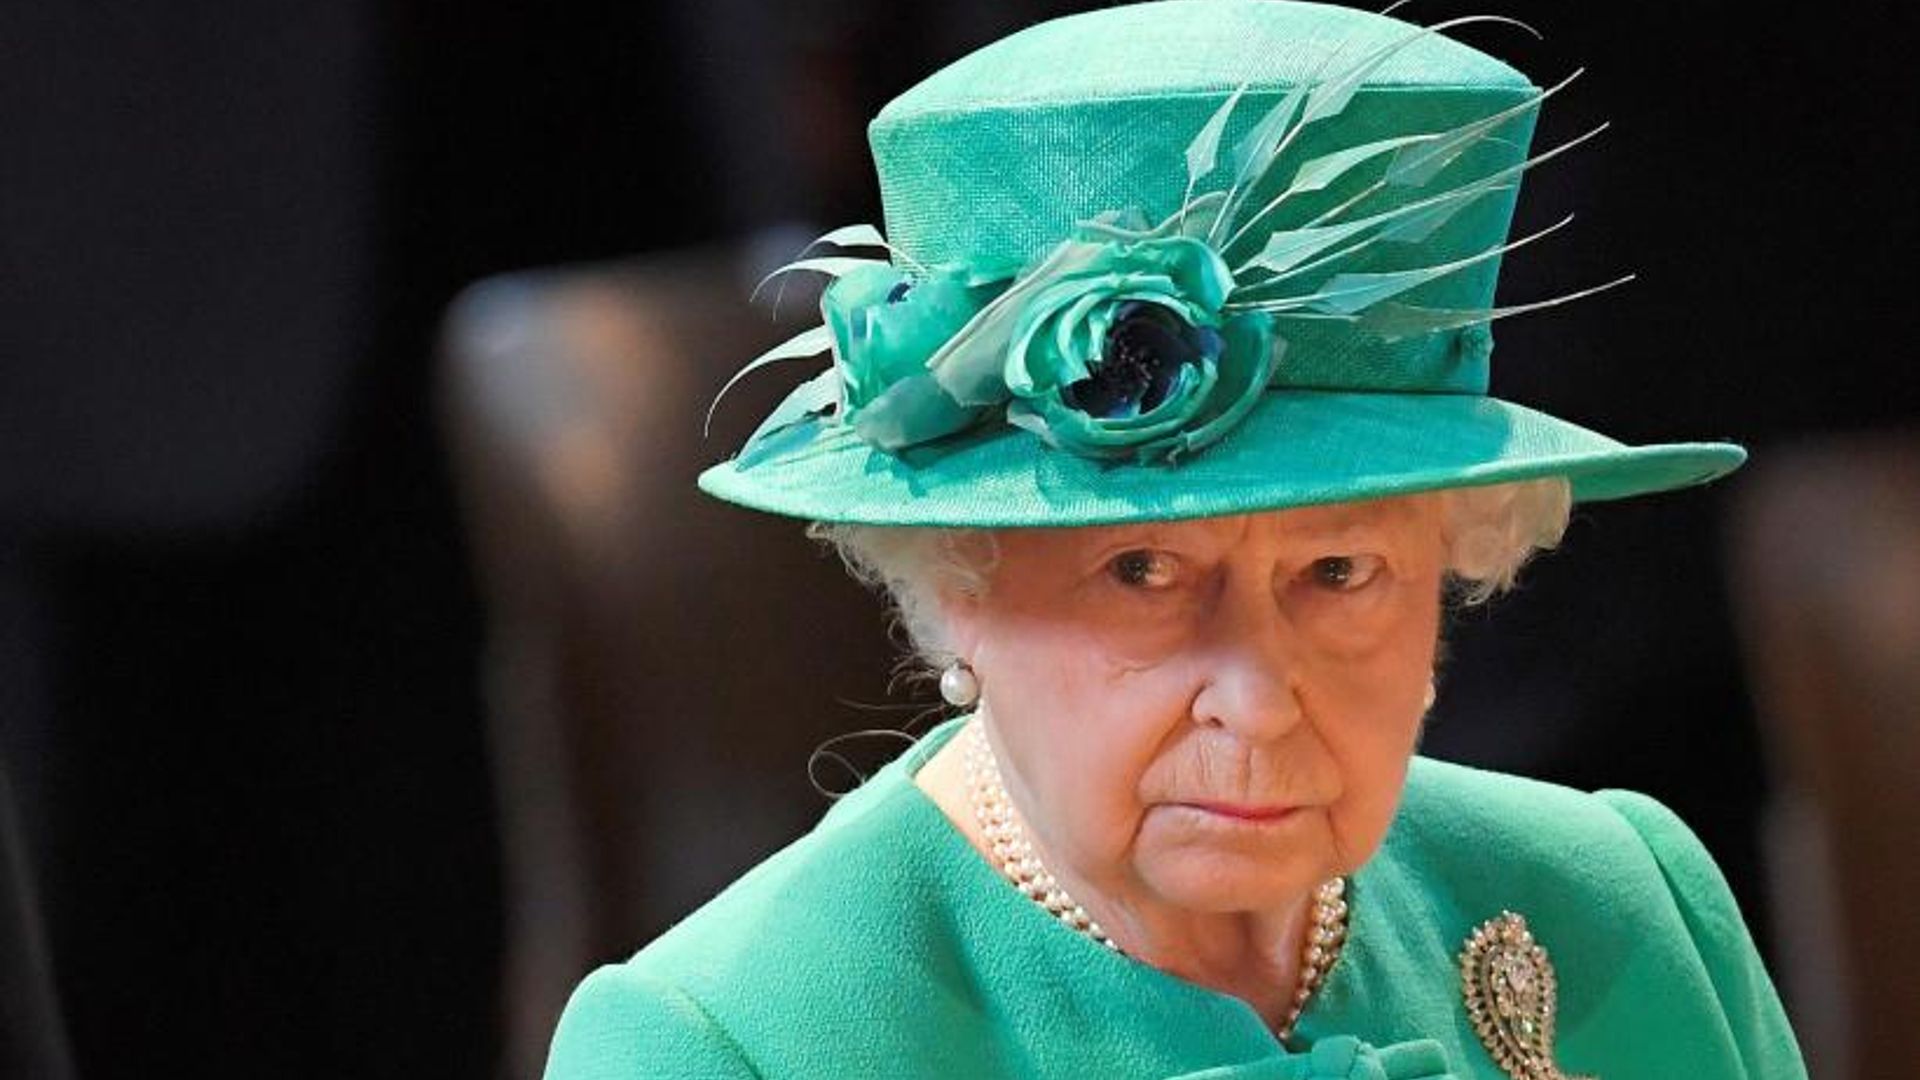 the queen looking sad